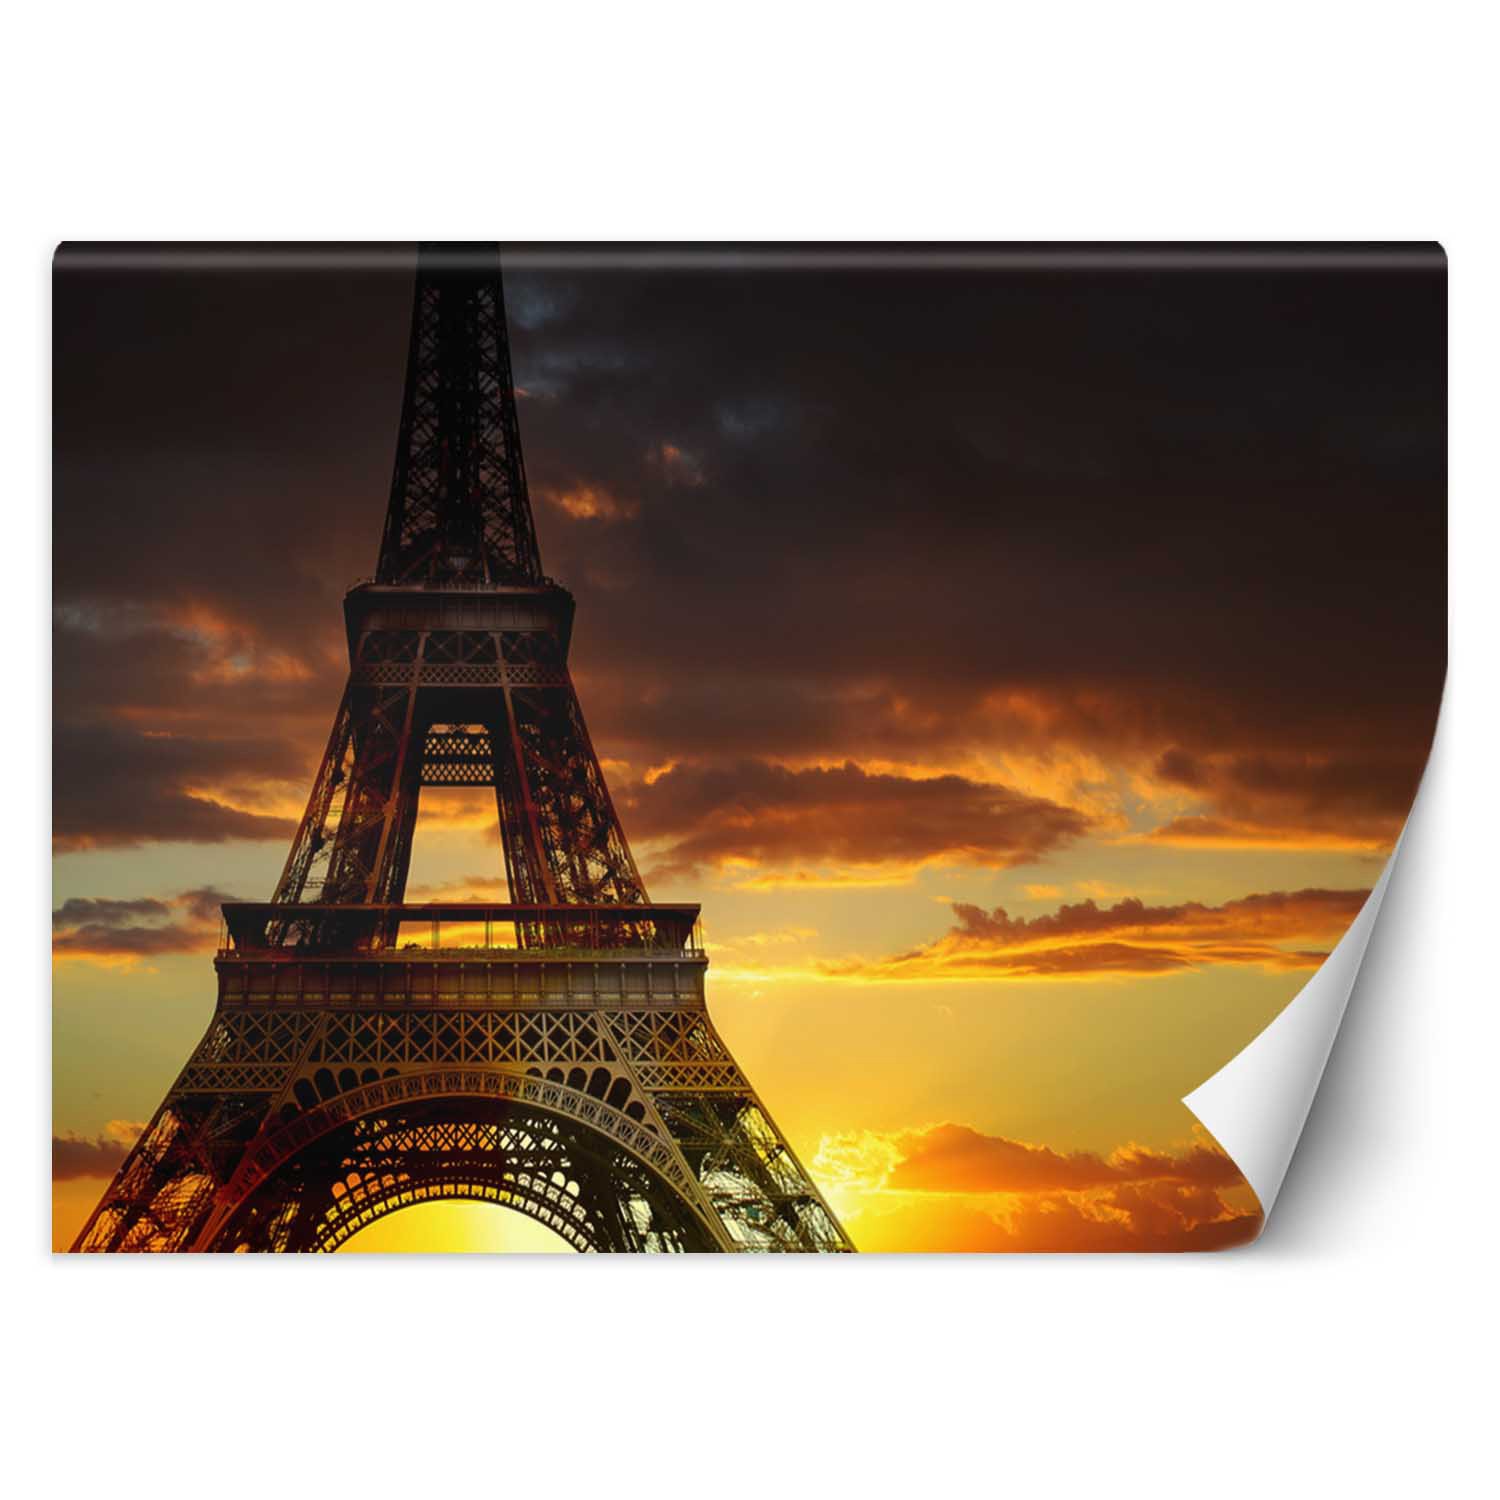 Trend24 – Behang – De Eiffeltoren Bij Zonsondergang – Behangpapier – Fotobehang – Behang Woonkamer – 450x315x2 cm – Incl. behanglijm